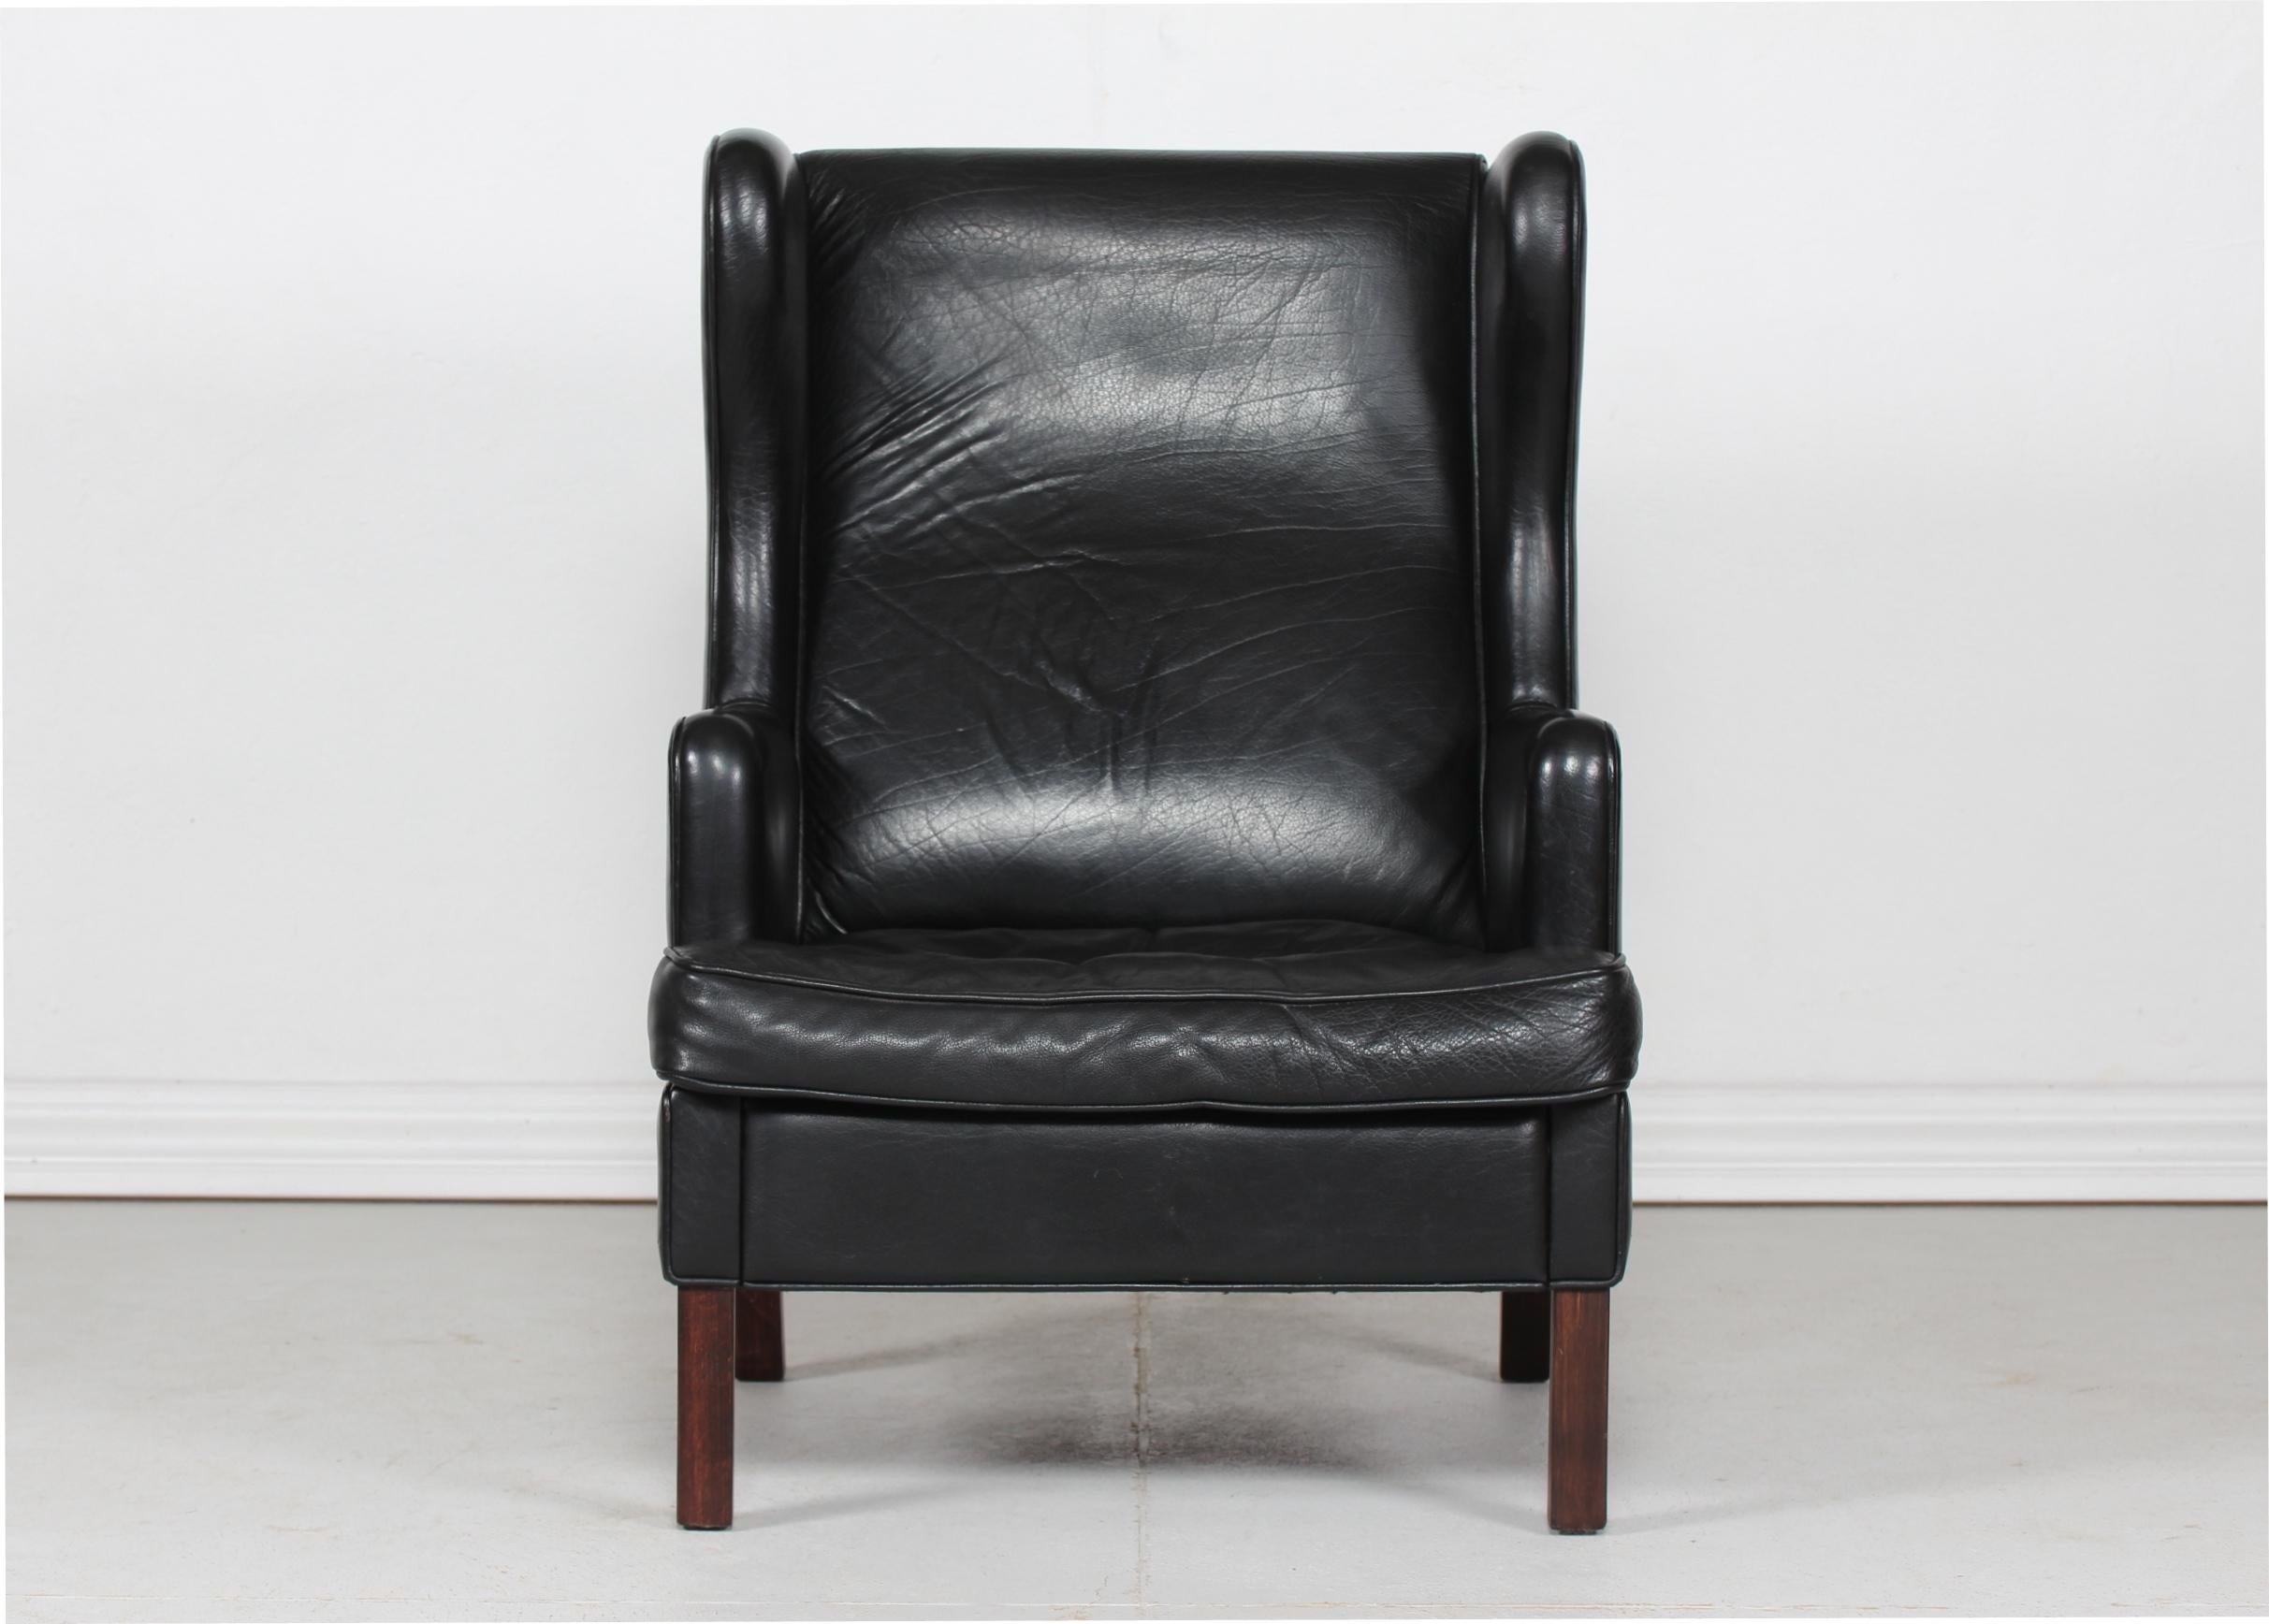 Moderner dänischer Ohrensessel mit Hocker im Stil von Kaare Klint.
Der bequeme Stuhl und Hocker ist mit schwarzem Leder in starker Qualität gepolstert.
Die Beine sind aus dunkel gebeiztem Buchenholz gefertigt.

Messungen Hocker
Höhe 40 cm
Breite 58